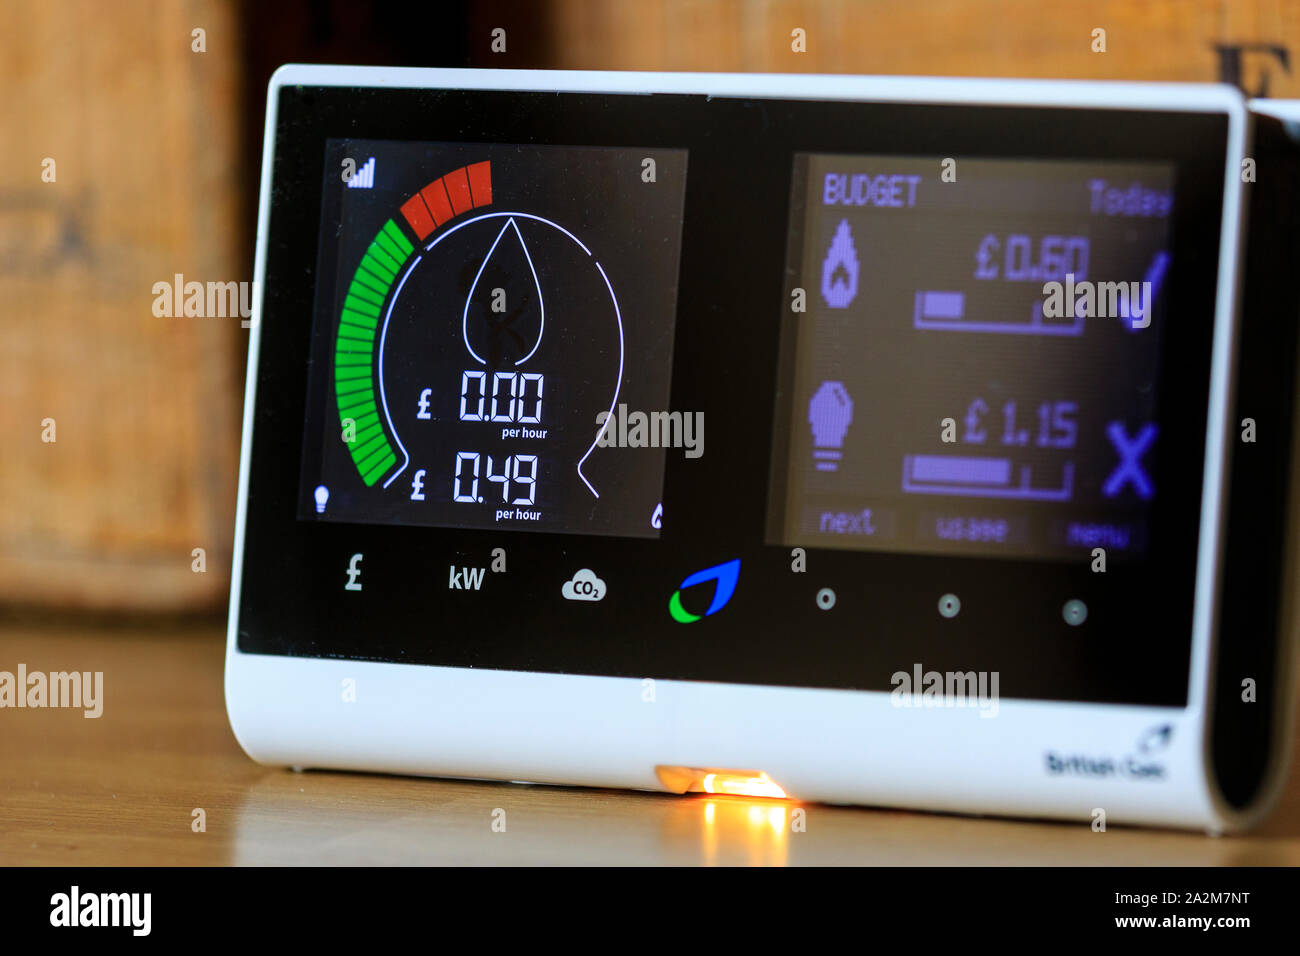 Famiglia British Gas smart meter sul piano di lavoro per il monitoraggio elettrico e il consumo di gas con conseguente risparmio di denaro per i residenti. Mostra ad alto consumo energetico. Foto Stock